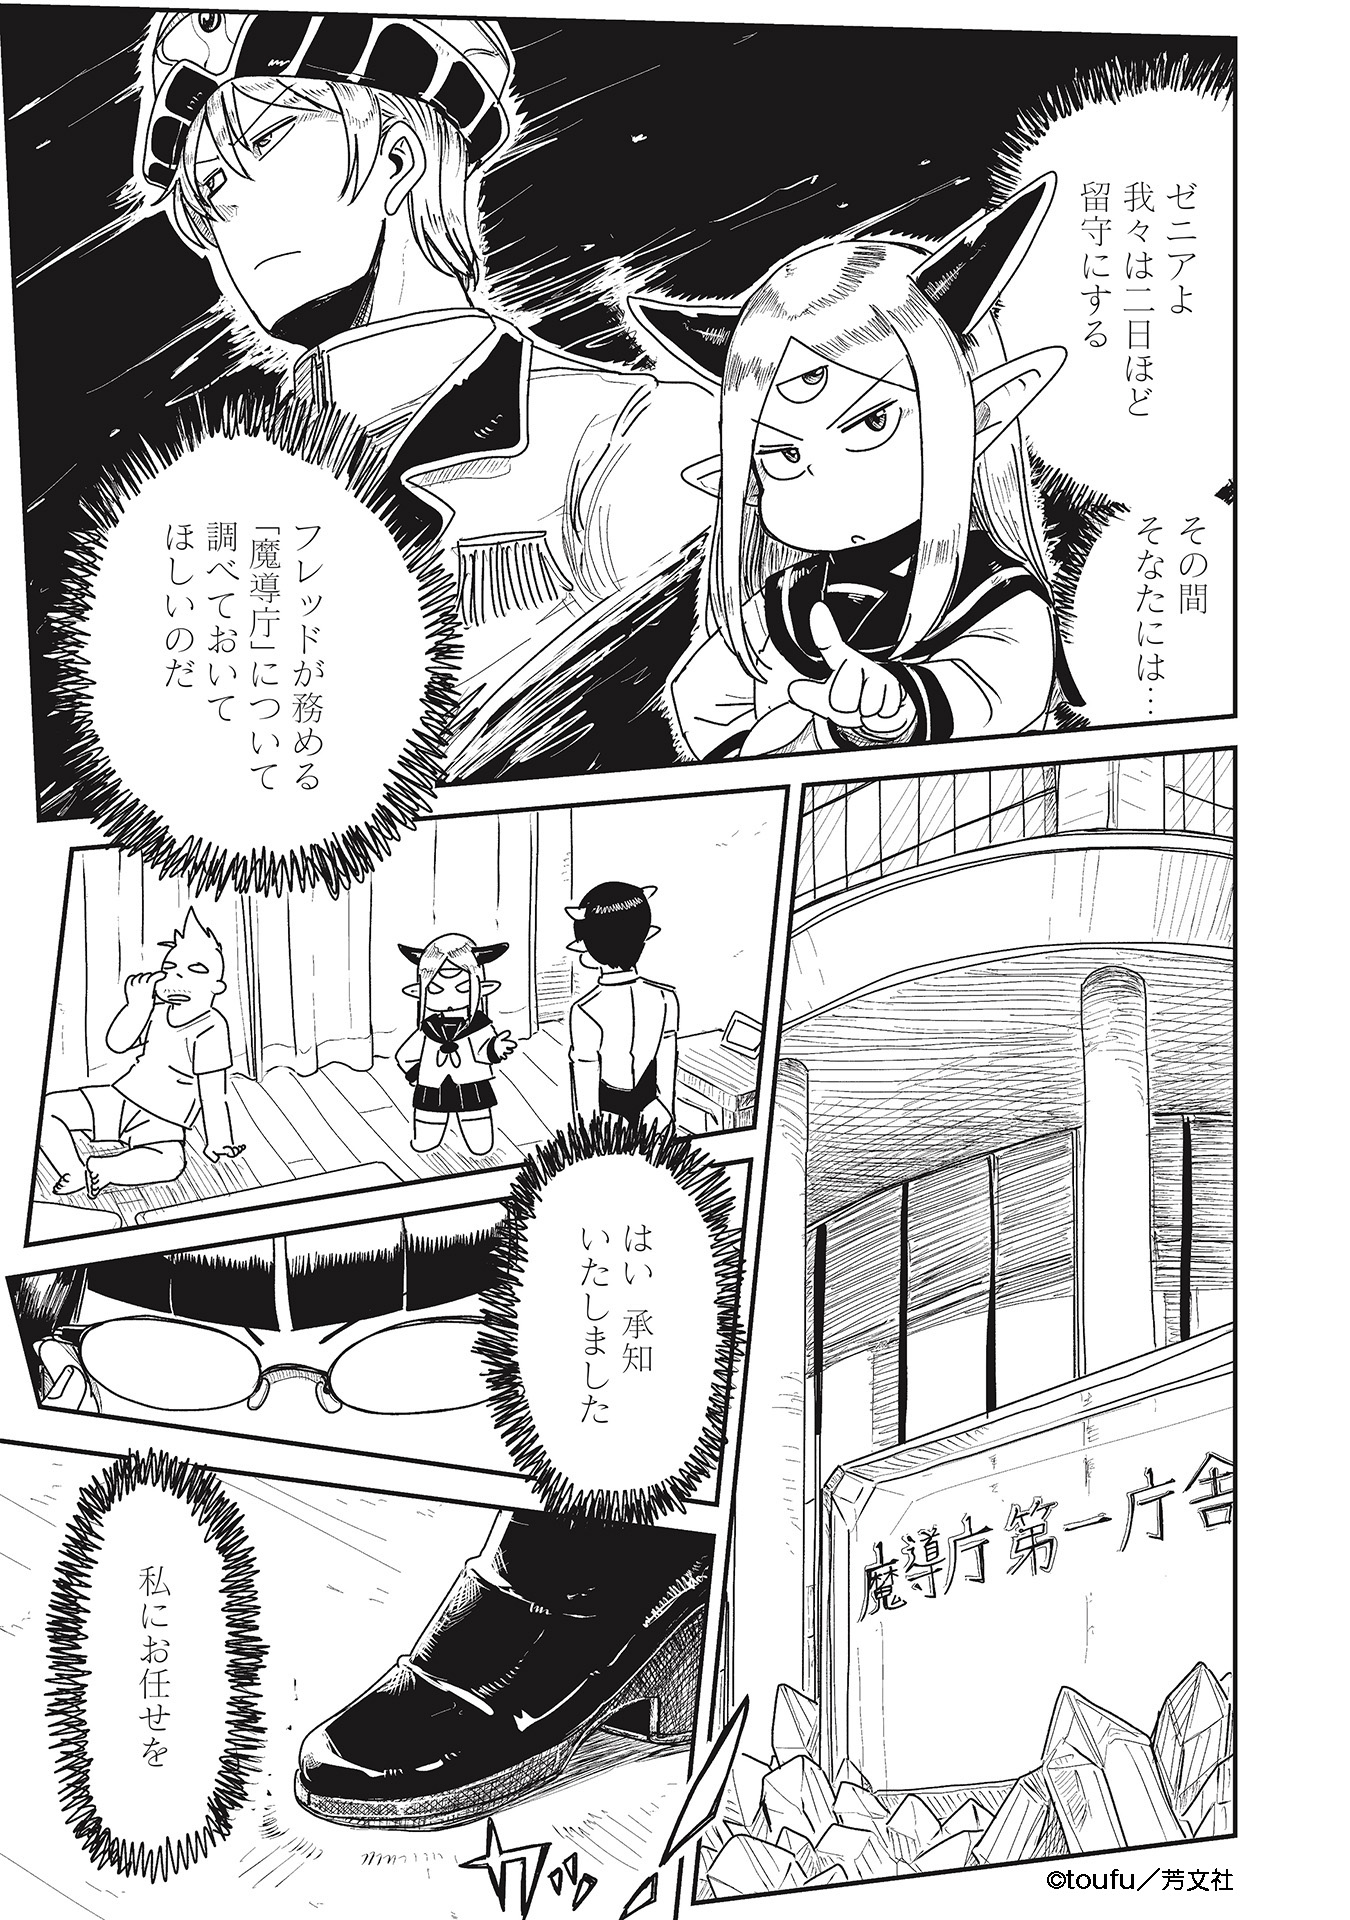 COMIC FUZコミックファズ on X: "Lv1魔王とワンルーム勇者 第